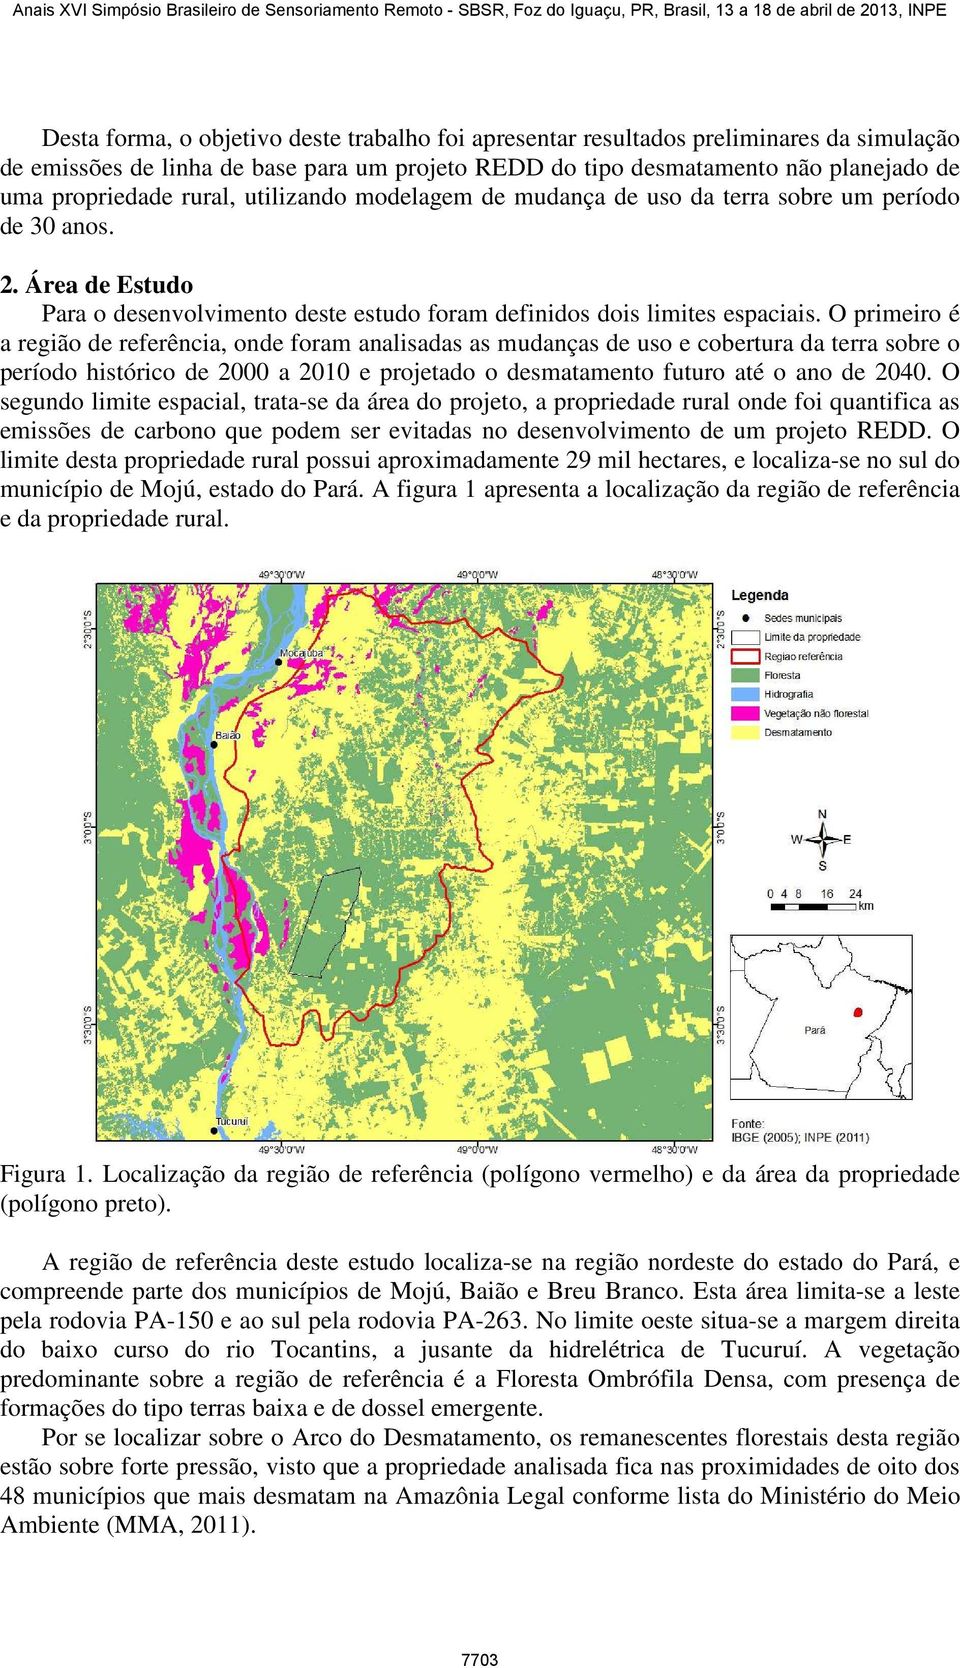 O primeiro é a região de referência, onde foram analisadas as mudanças de uso e cobertura da terra sobre o período histórico de 2000 a 2010 e projetado o desmatamento futuro até o ano de 2040.